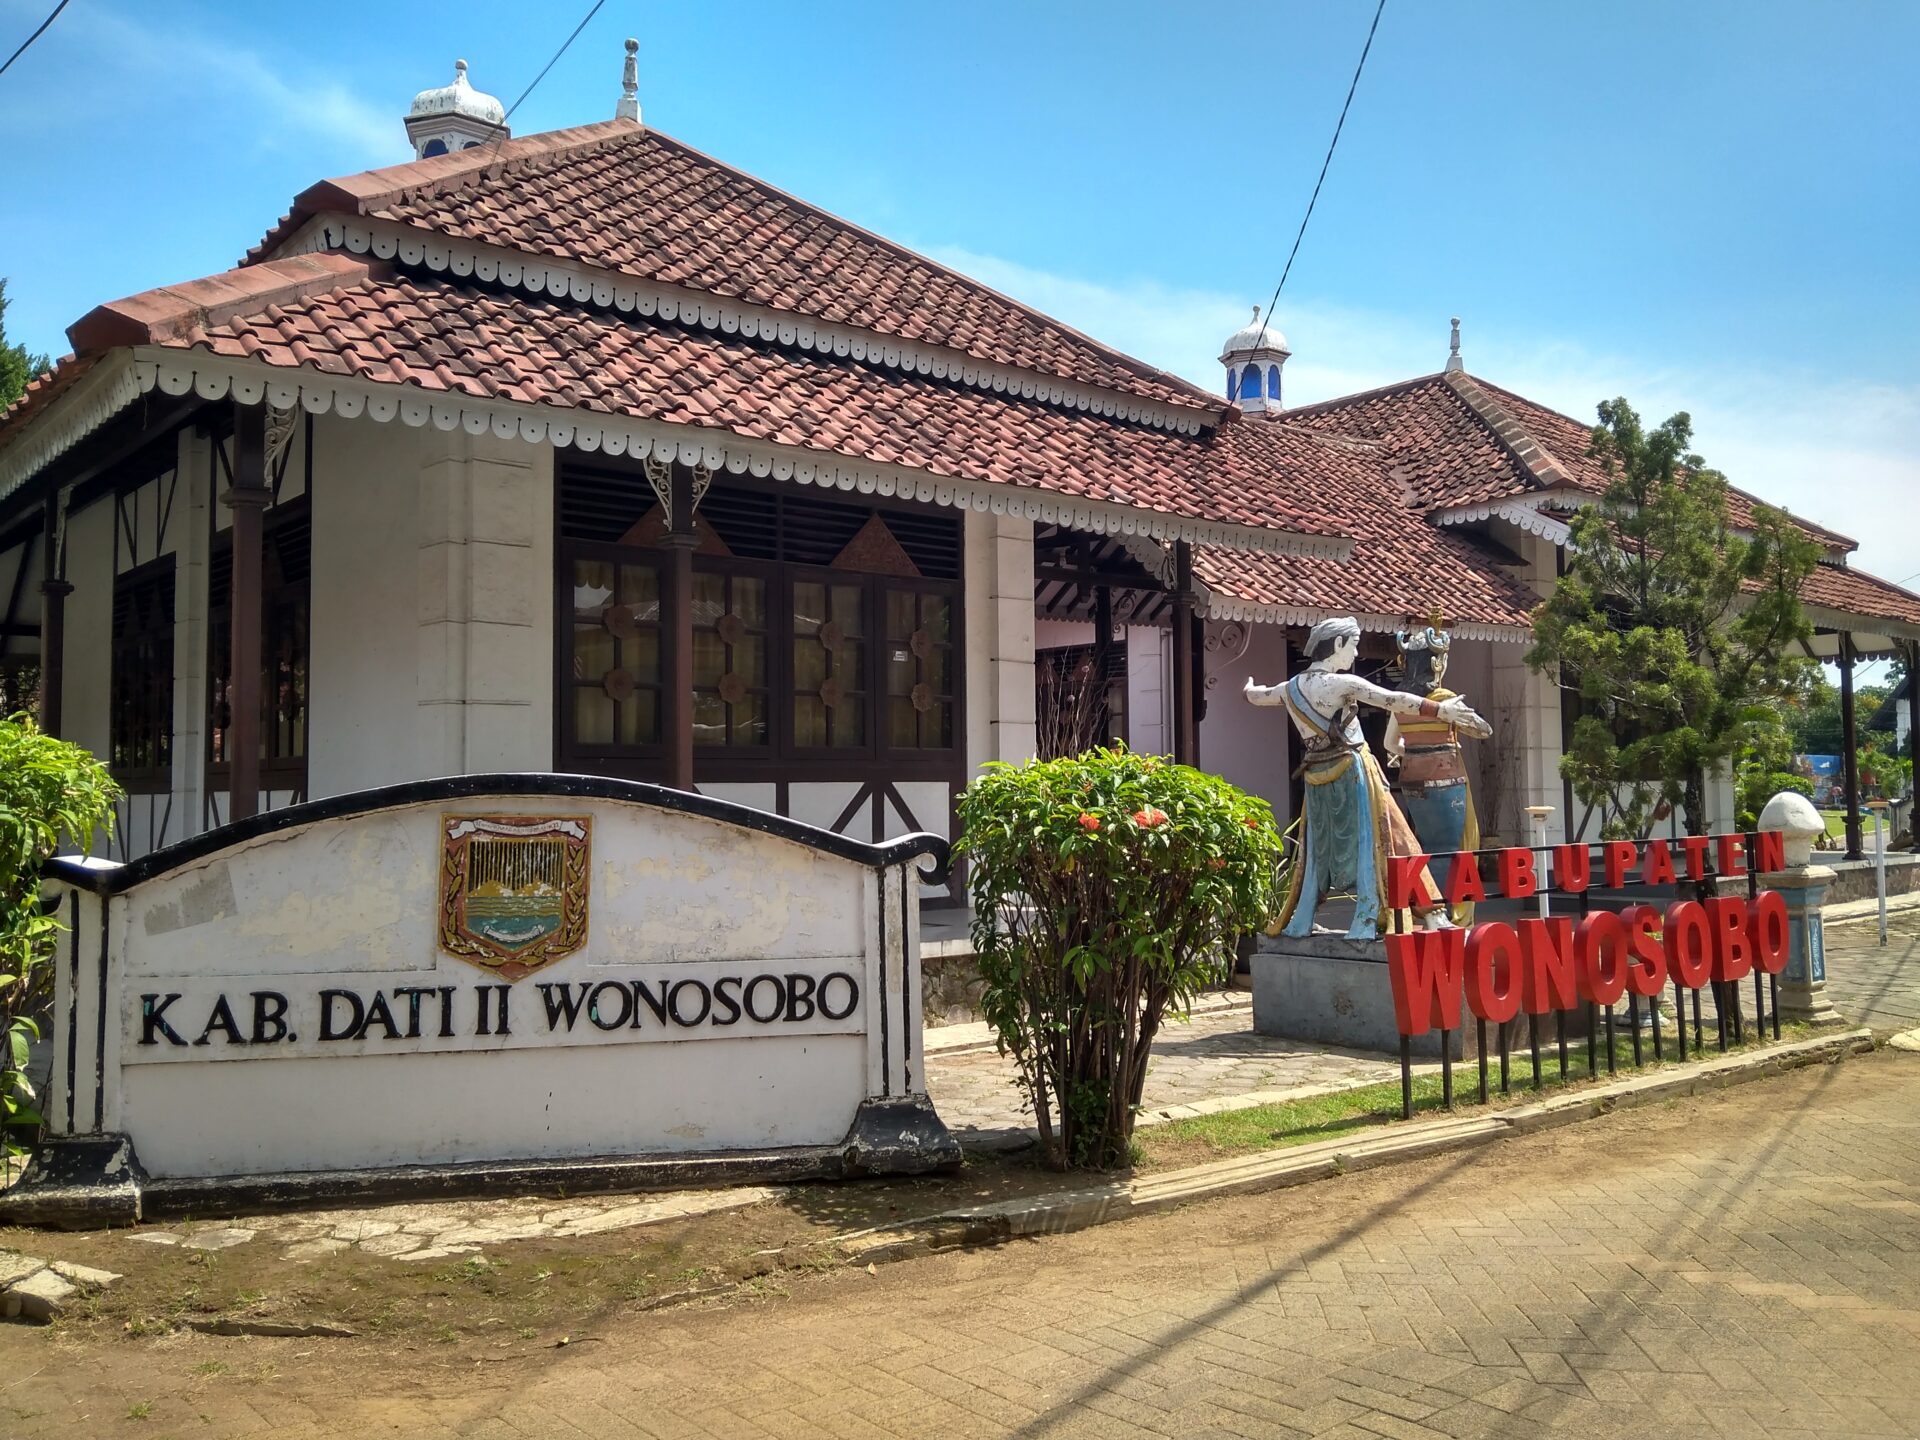 maerokoco semarang Maerokoco Semarang, TMIInya Jawa Tengah Jelajahi 35 Miniatur Rumah Adat